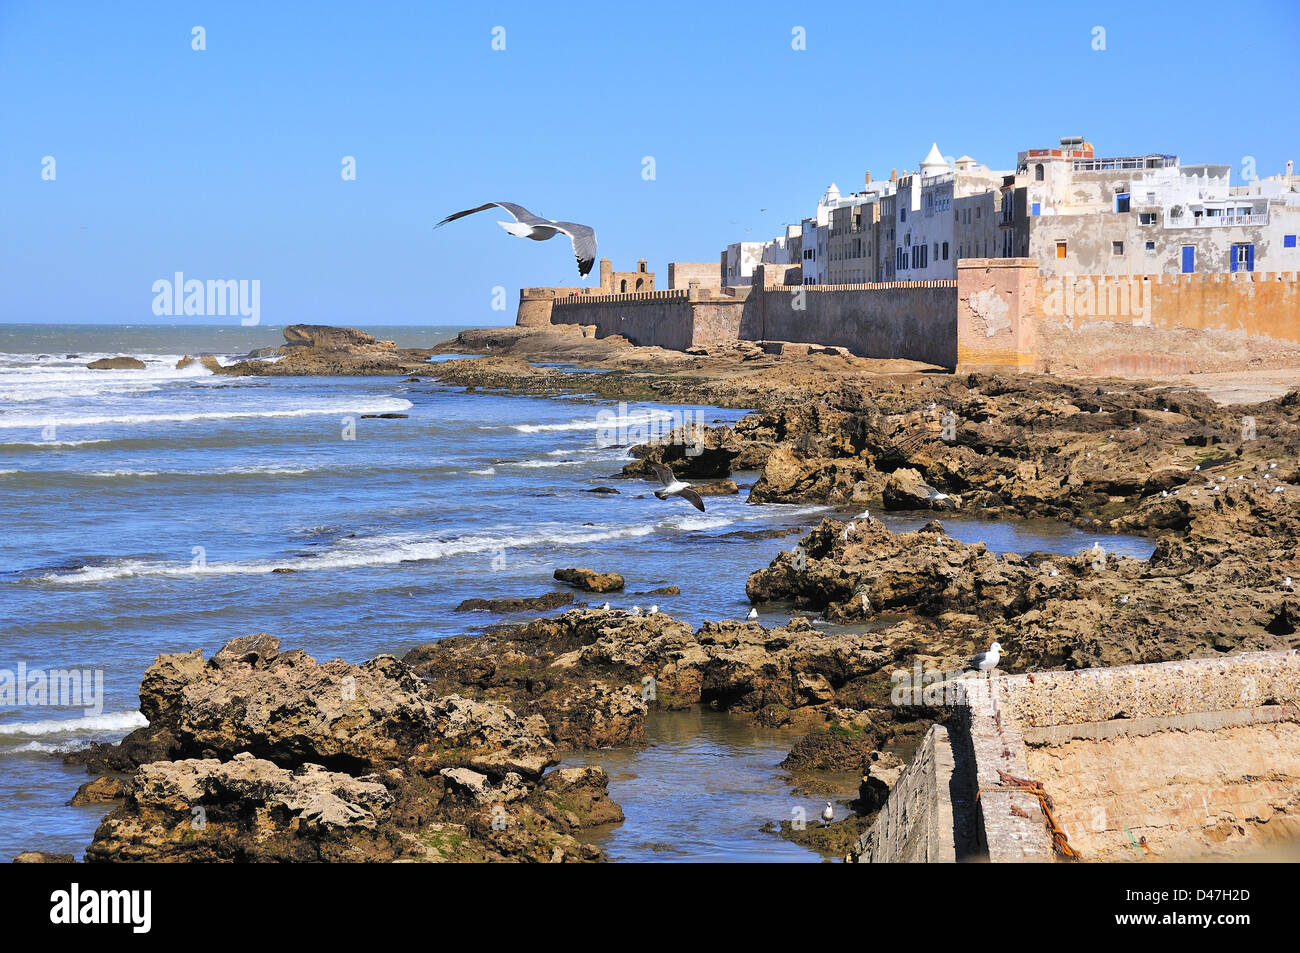 Les mouettes survolent la côte atlantique parsemée de rochers, devant les murs fortifiés de la ville côtière d'Essaouira, au Maroc Banque D'Images